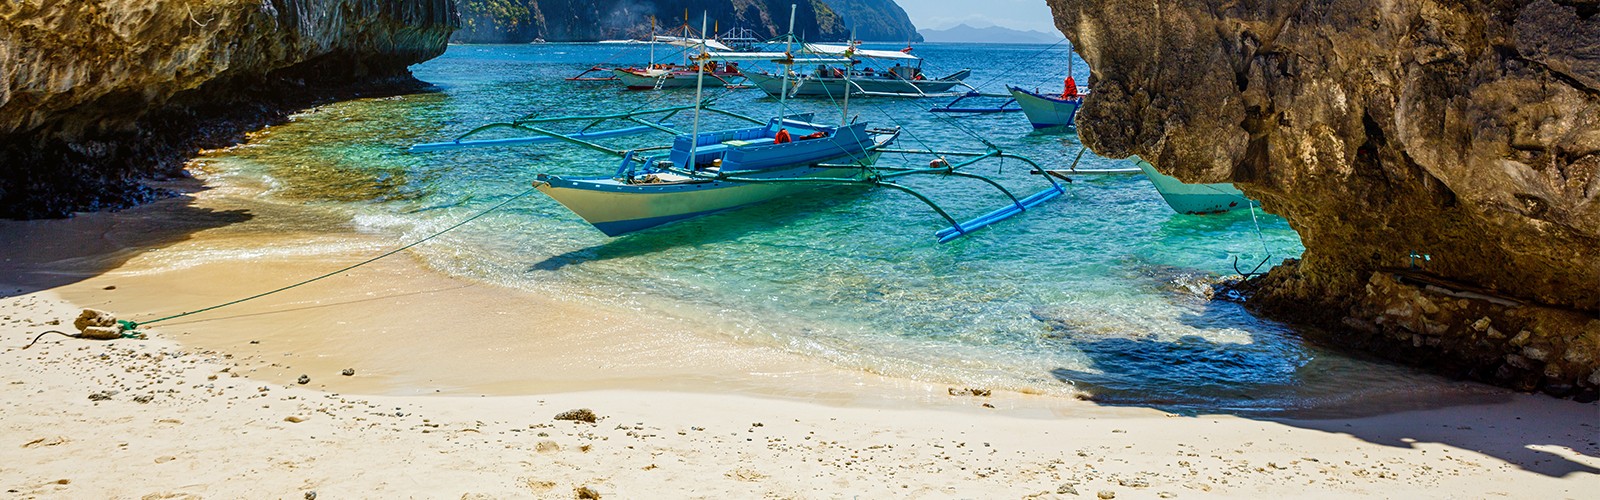 header - best phillipines islands to visit